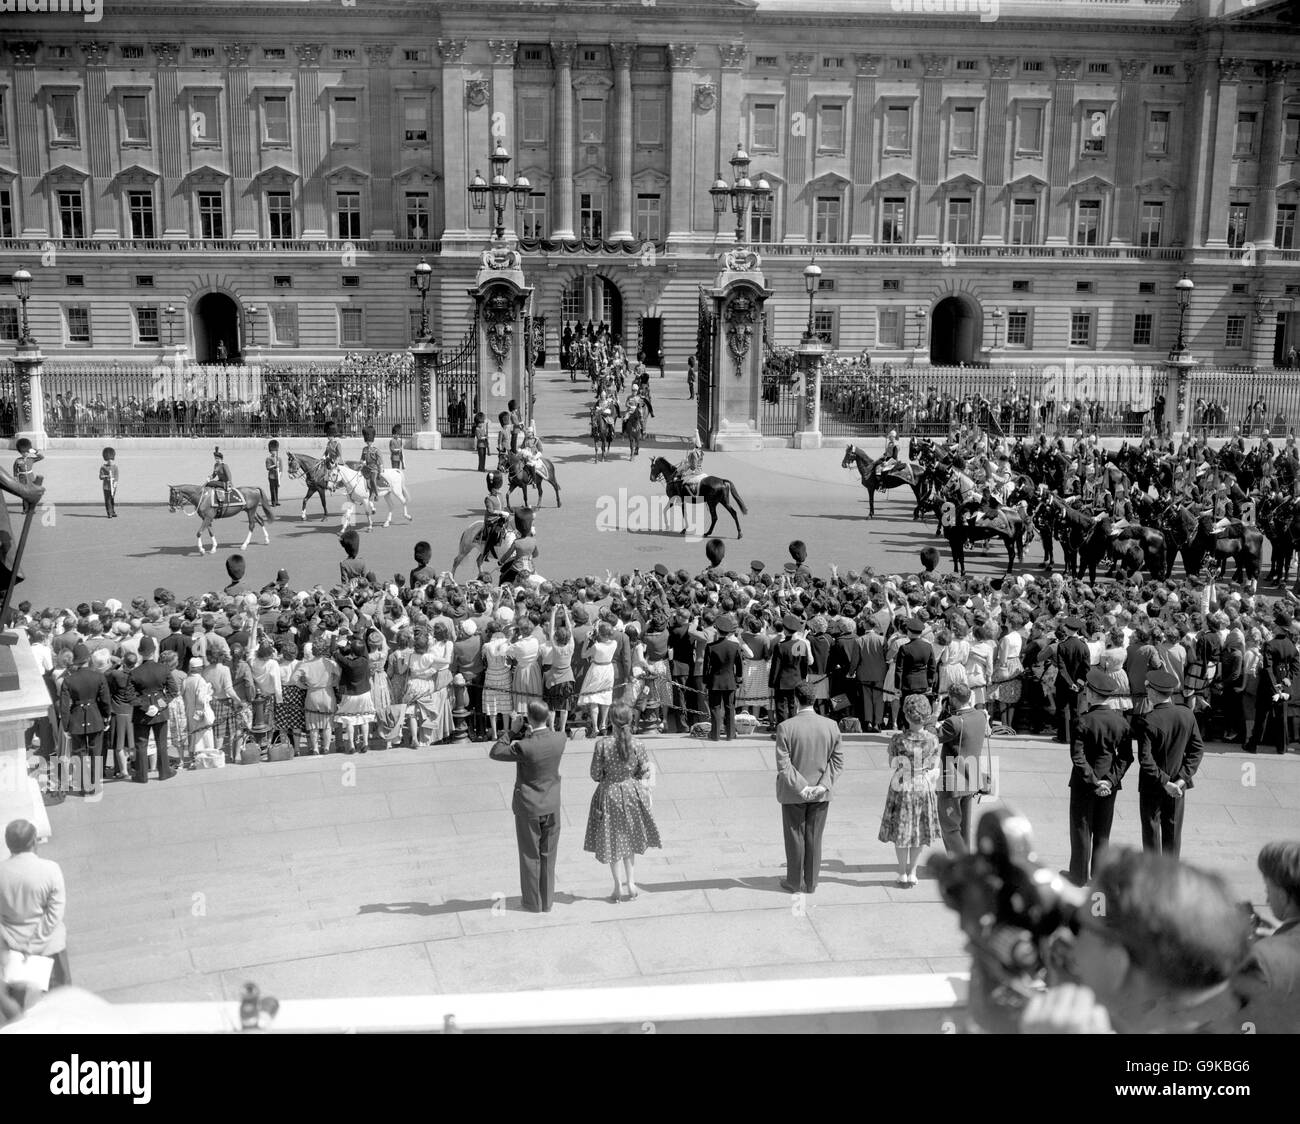 La scène à Buckingham Palace comme la Reine, monté sur le cheval de police de châtaignier Imp et avec un souverain Escort de la Cavalerie de la maison, à gauche pour Horse Guards Parade pour assister à la cérémonie de Trooping la couleur en l'honneur de son anniversaire officiel. Banque D'Images